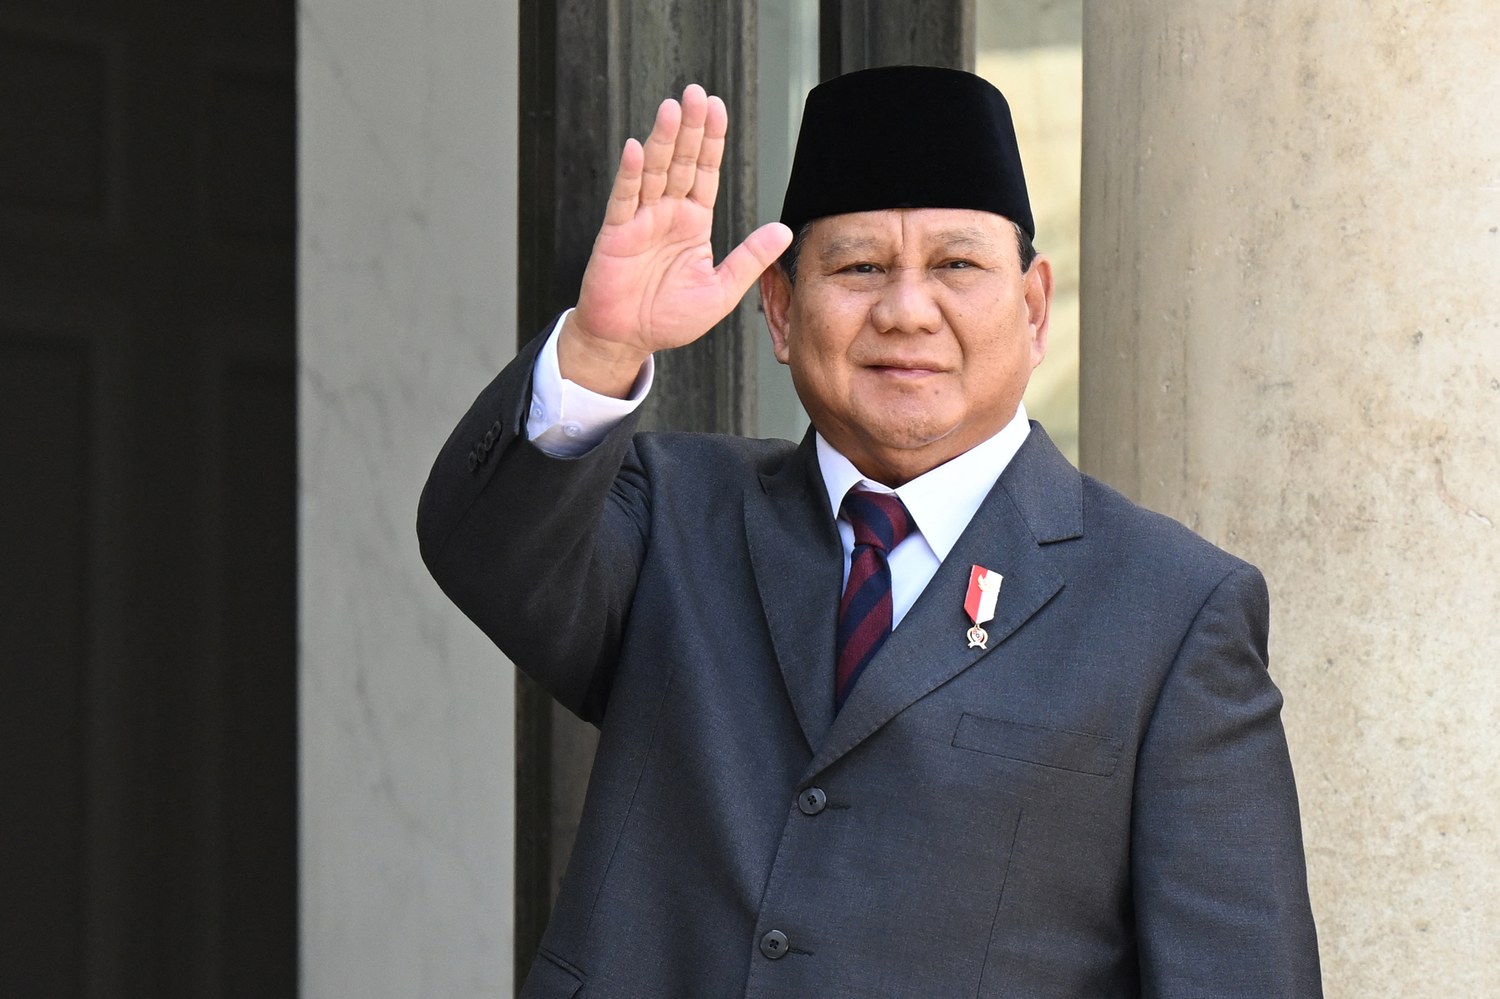 Prabowo Subianto Calon Presiden 2024